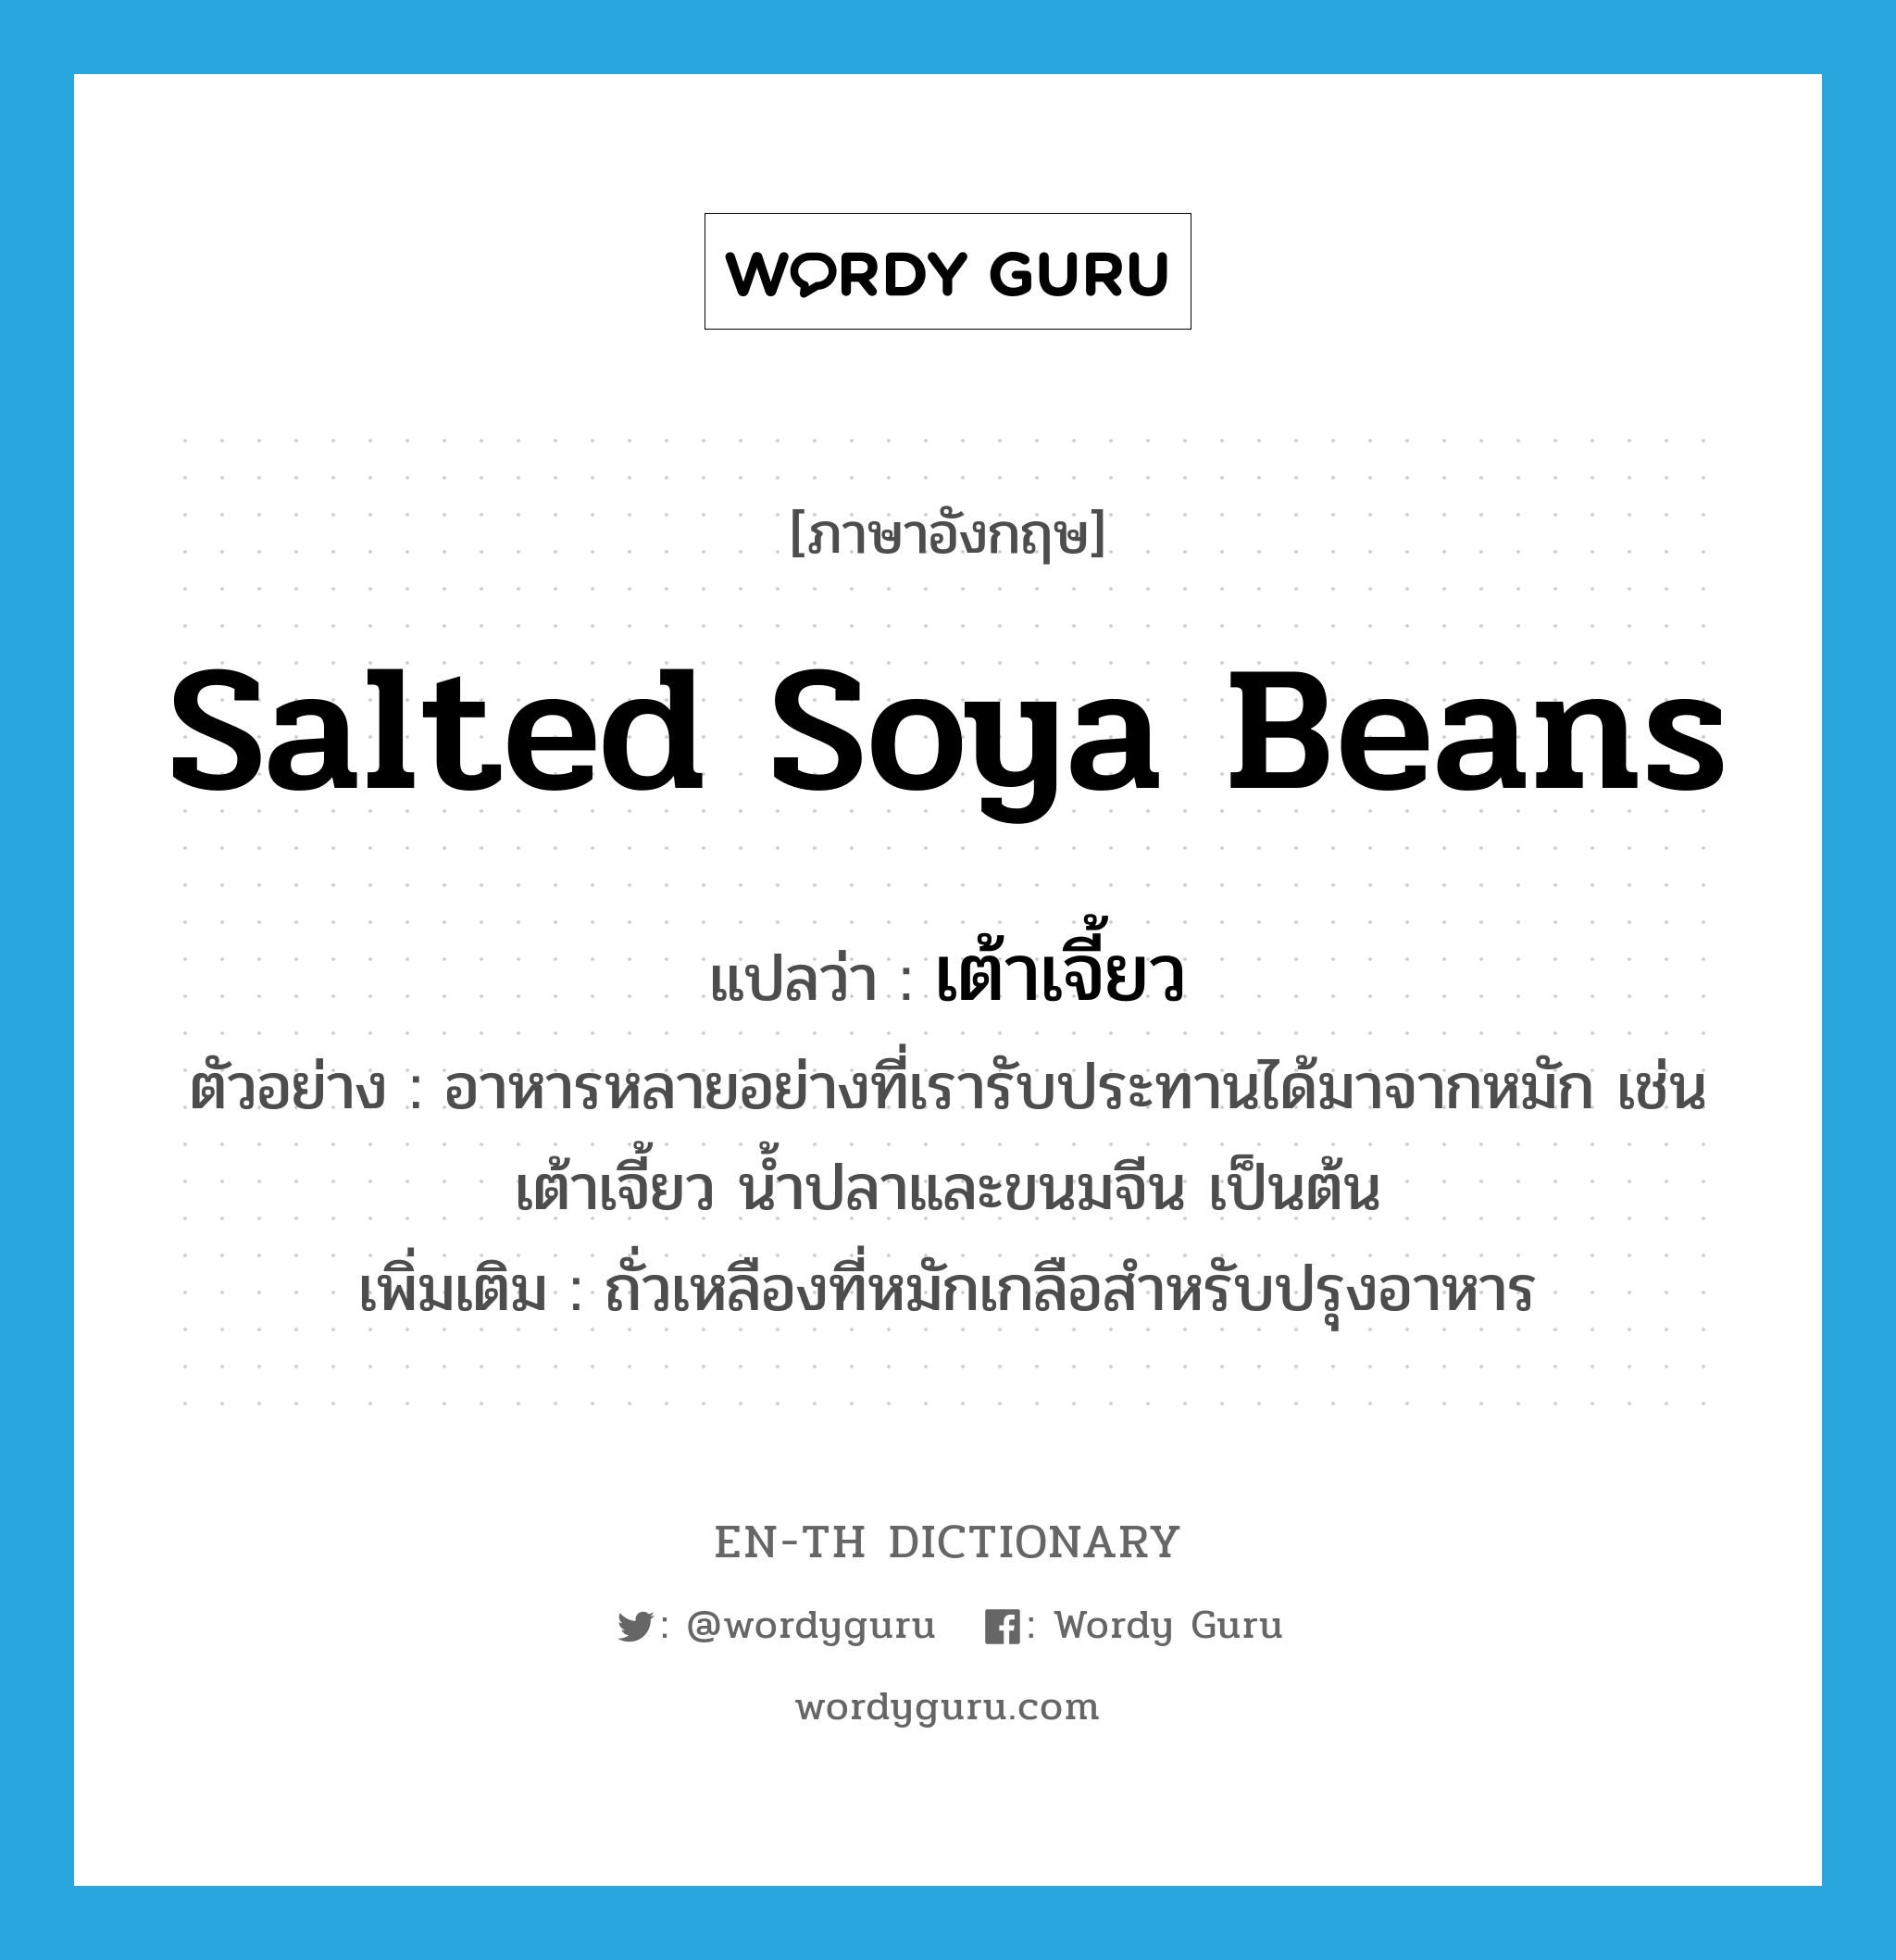 salted soya beans แปลว่า?, คำศัพท์ภาษาอังกฤษ salted soya beans แปลว่า เต้าเจี้ยว ประเภท N ตัวอย่าง อาหารหลายอย่างที่เรารับประทานได้มาจากหมัก เช่นเต้าเจี้ยว น้ำปลาและขนมจีน เป็นต้น เพิ่มเติม ถั่วเหลืองที่หมักเกลือสำหรับปรุงอาหาร หมวด N